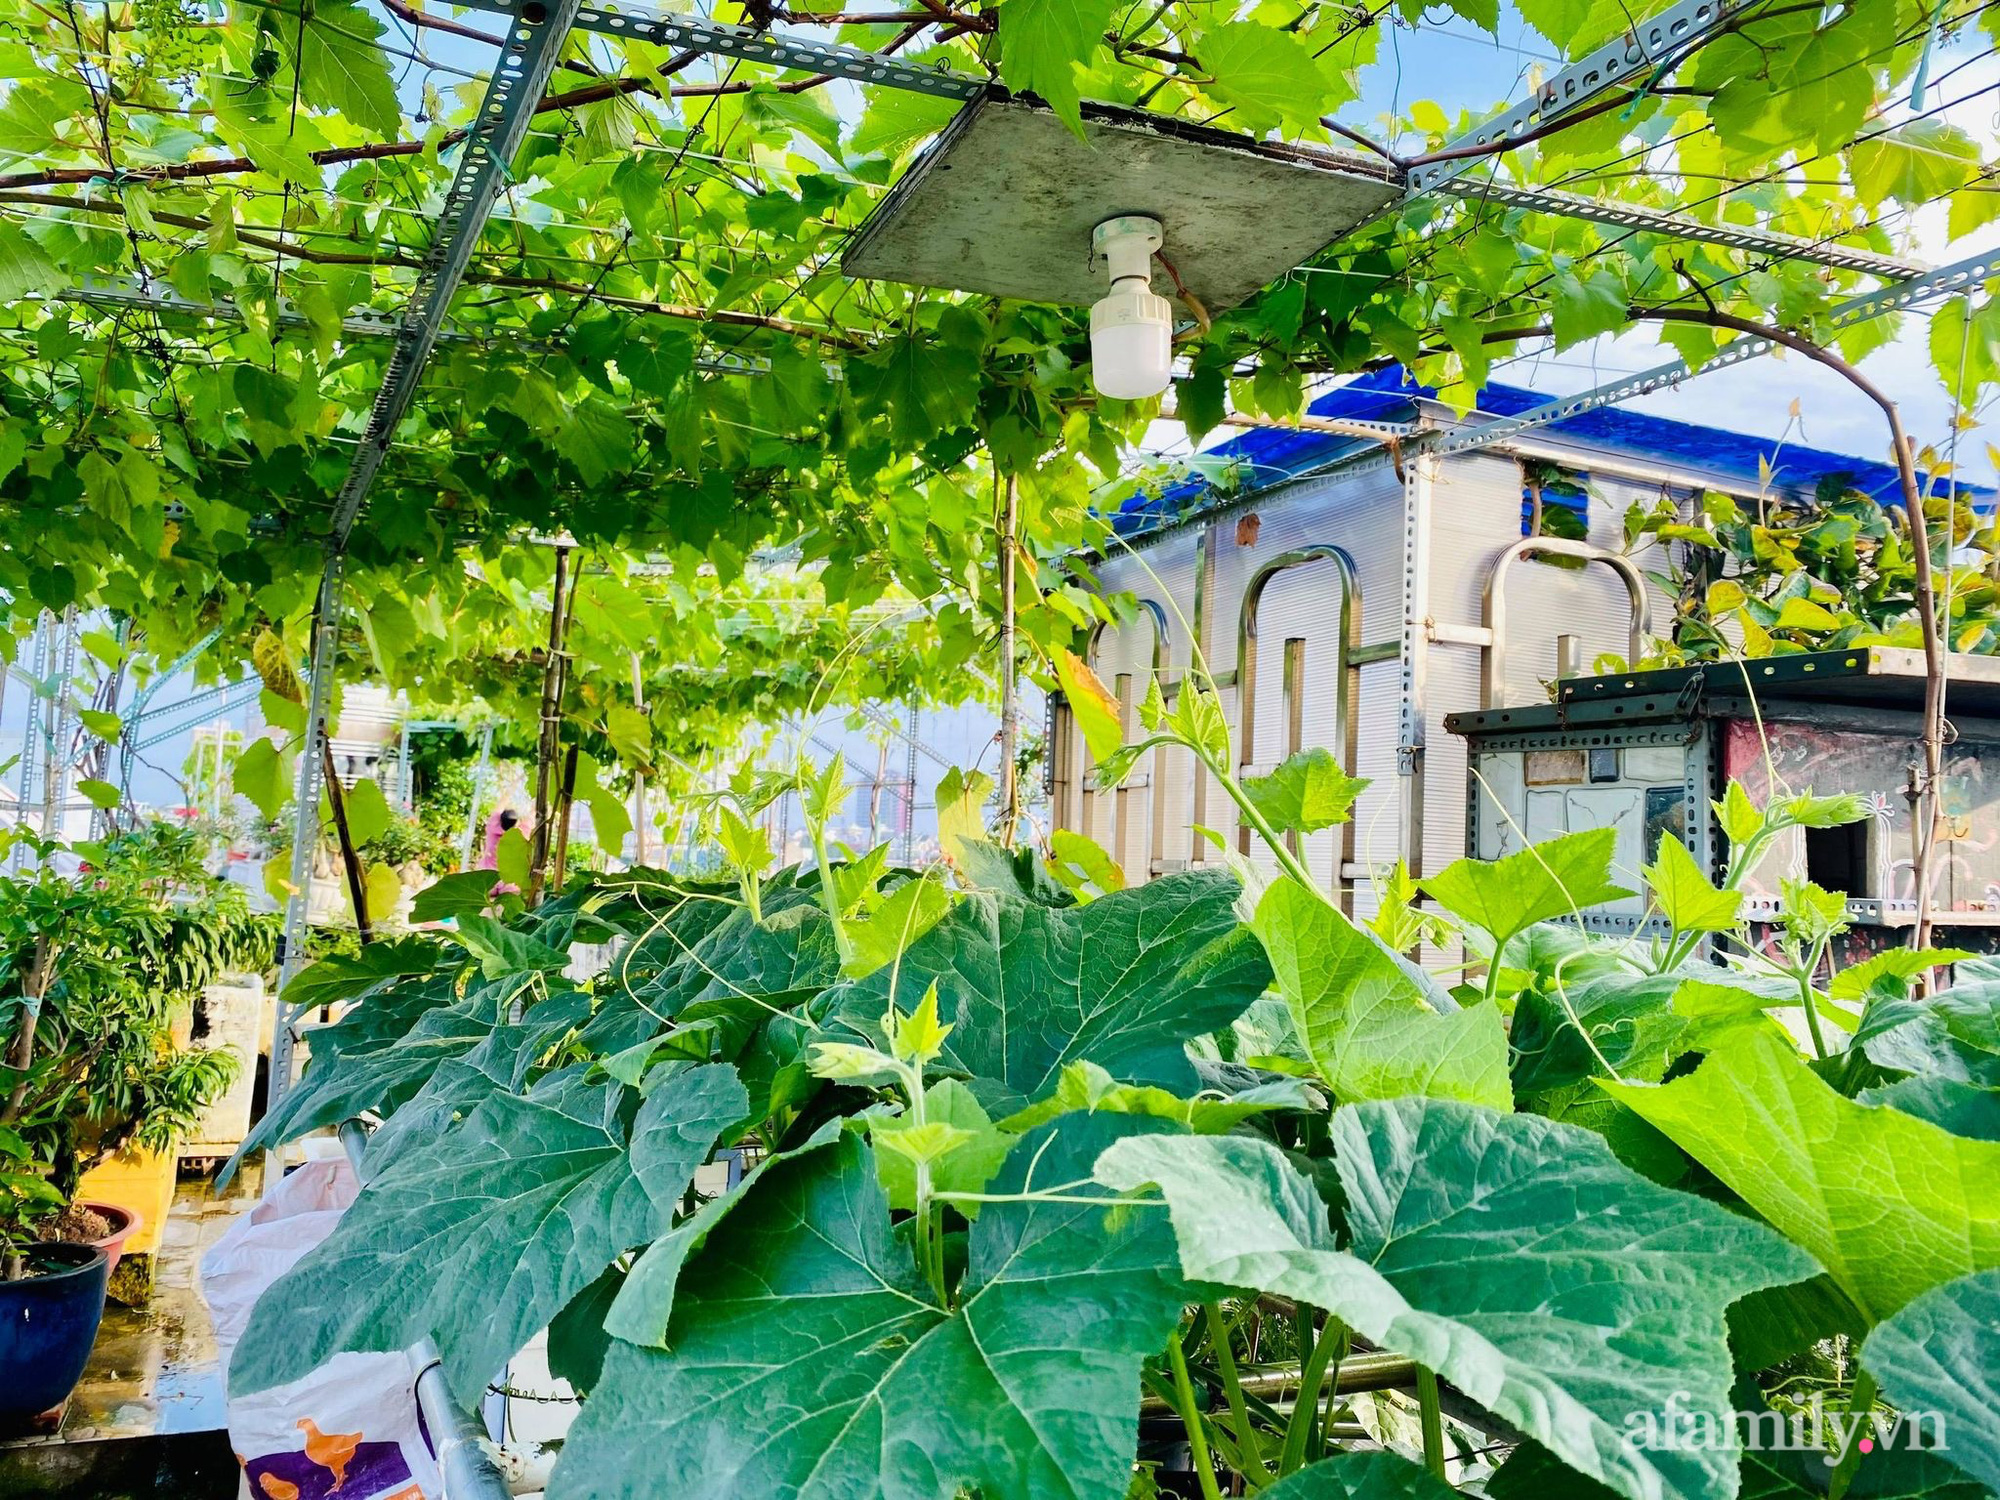 Khu vườn xanh tươi như nông trại trên sân thượng của gia đình ở Sài Gòn - Ảnh 6.